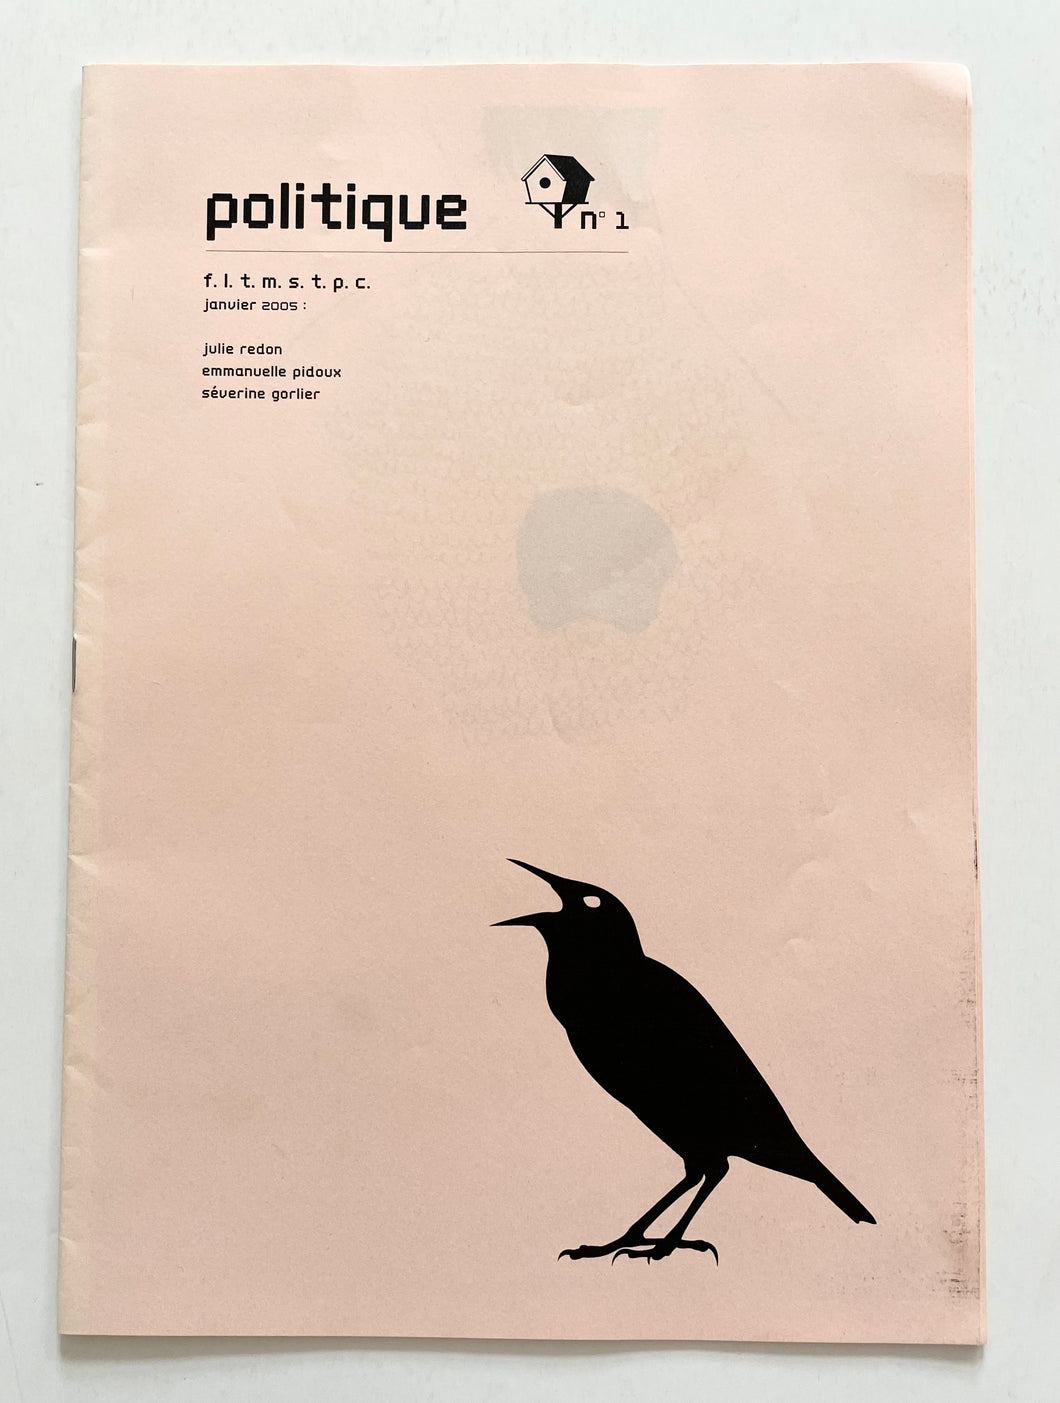 Politique 01 | Redon, Pidoux, Gorlier  (fltmstpc)